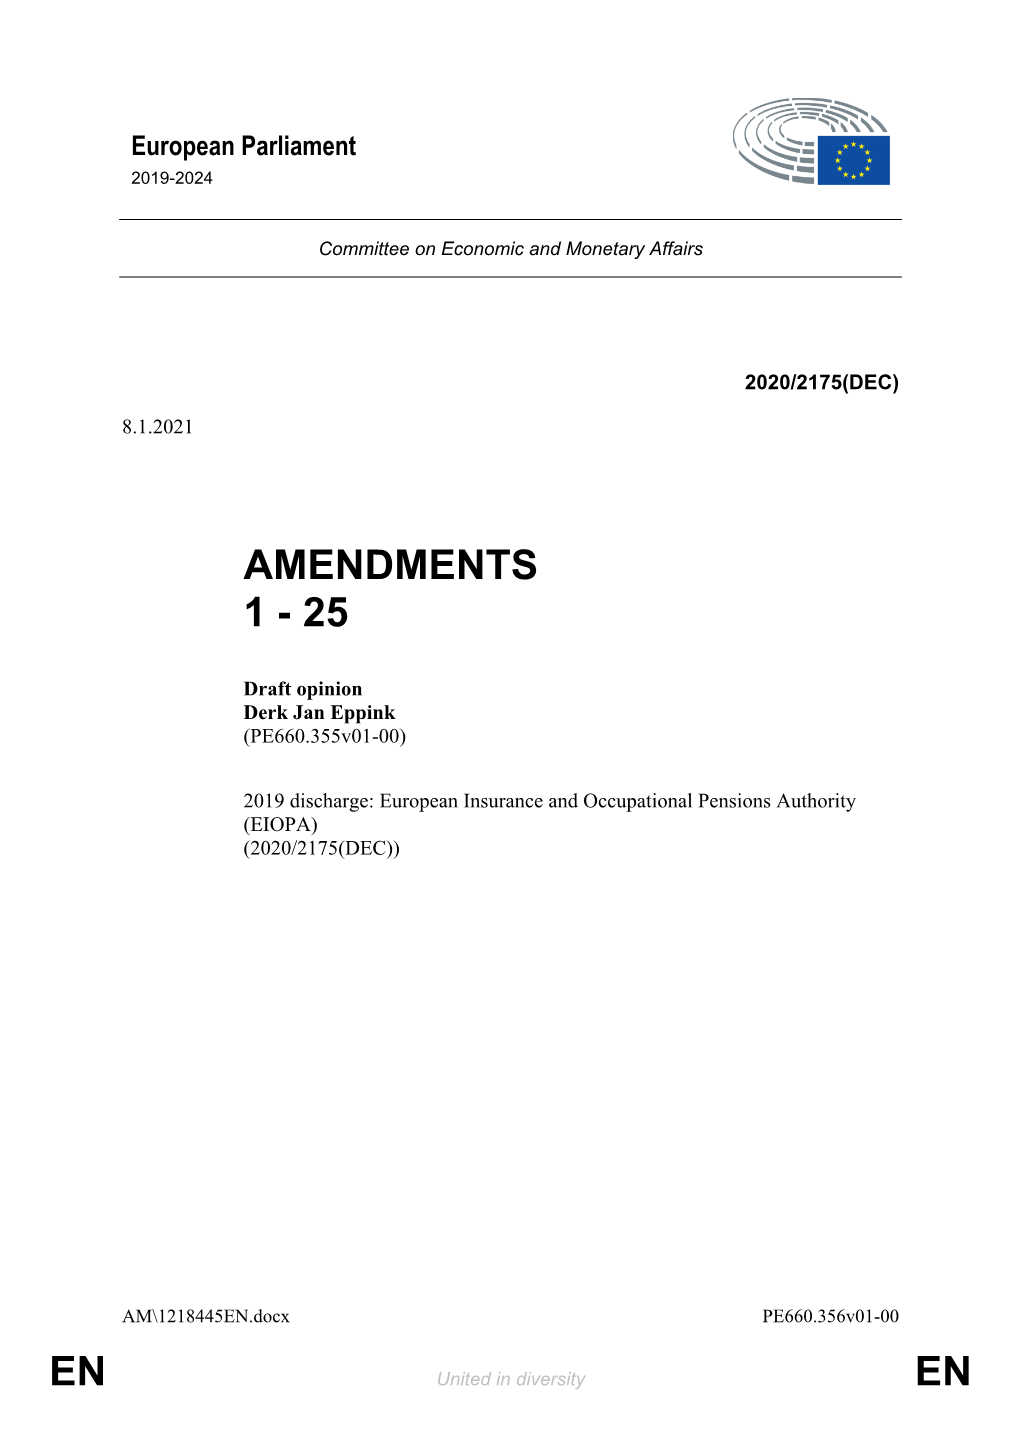 En En Amendments 1